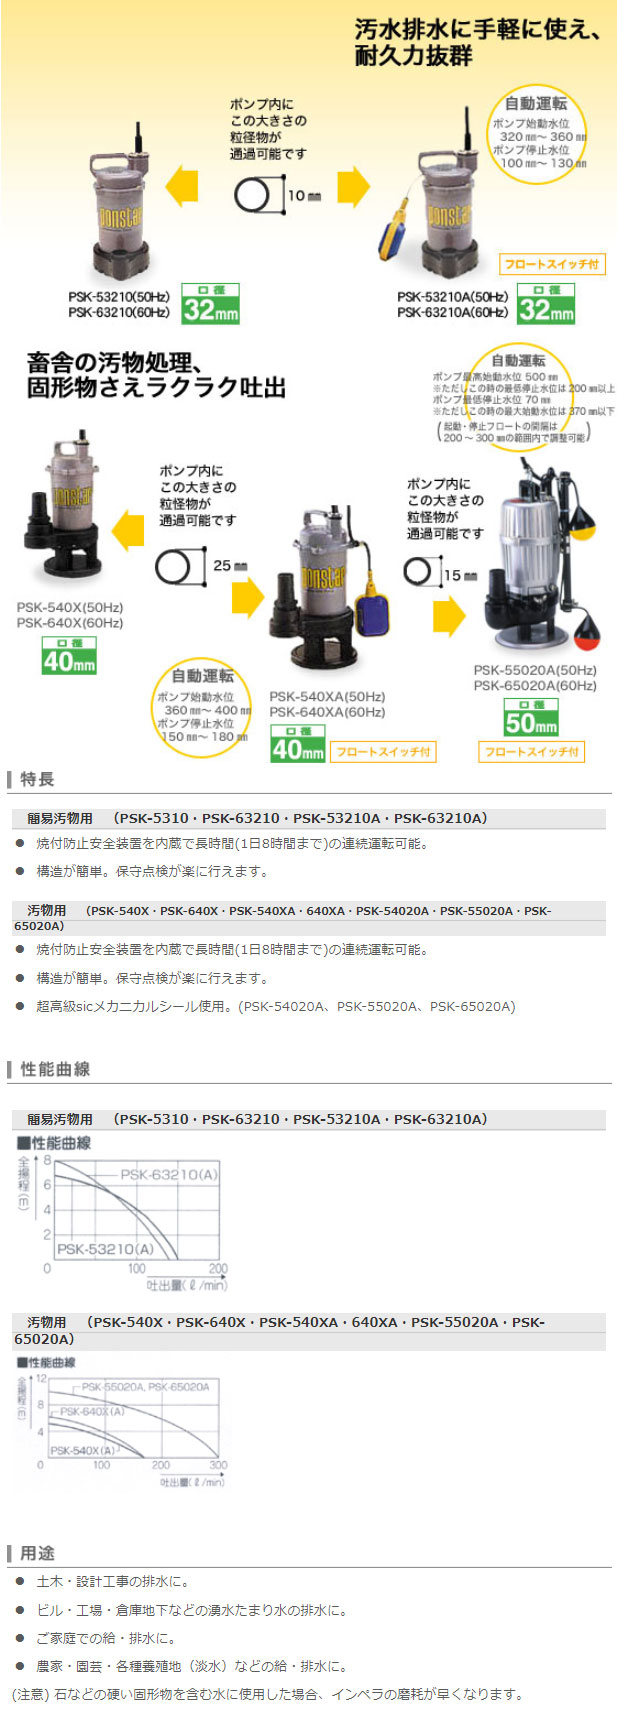 汚物用水中ポンプ PSK-540X(PSK-540X-AAA-2) | 株式会社工進【公式】